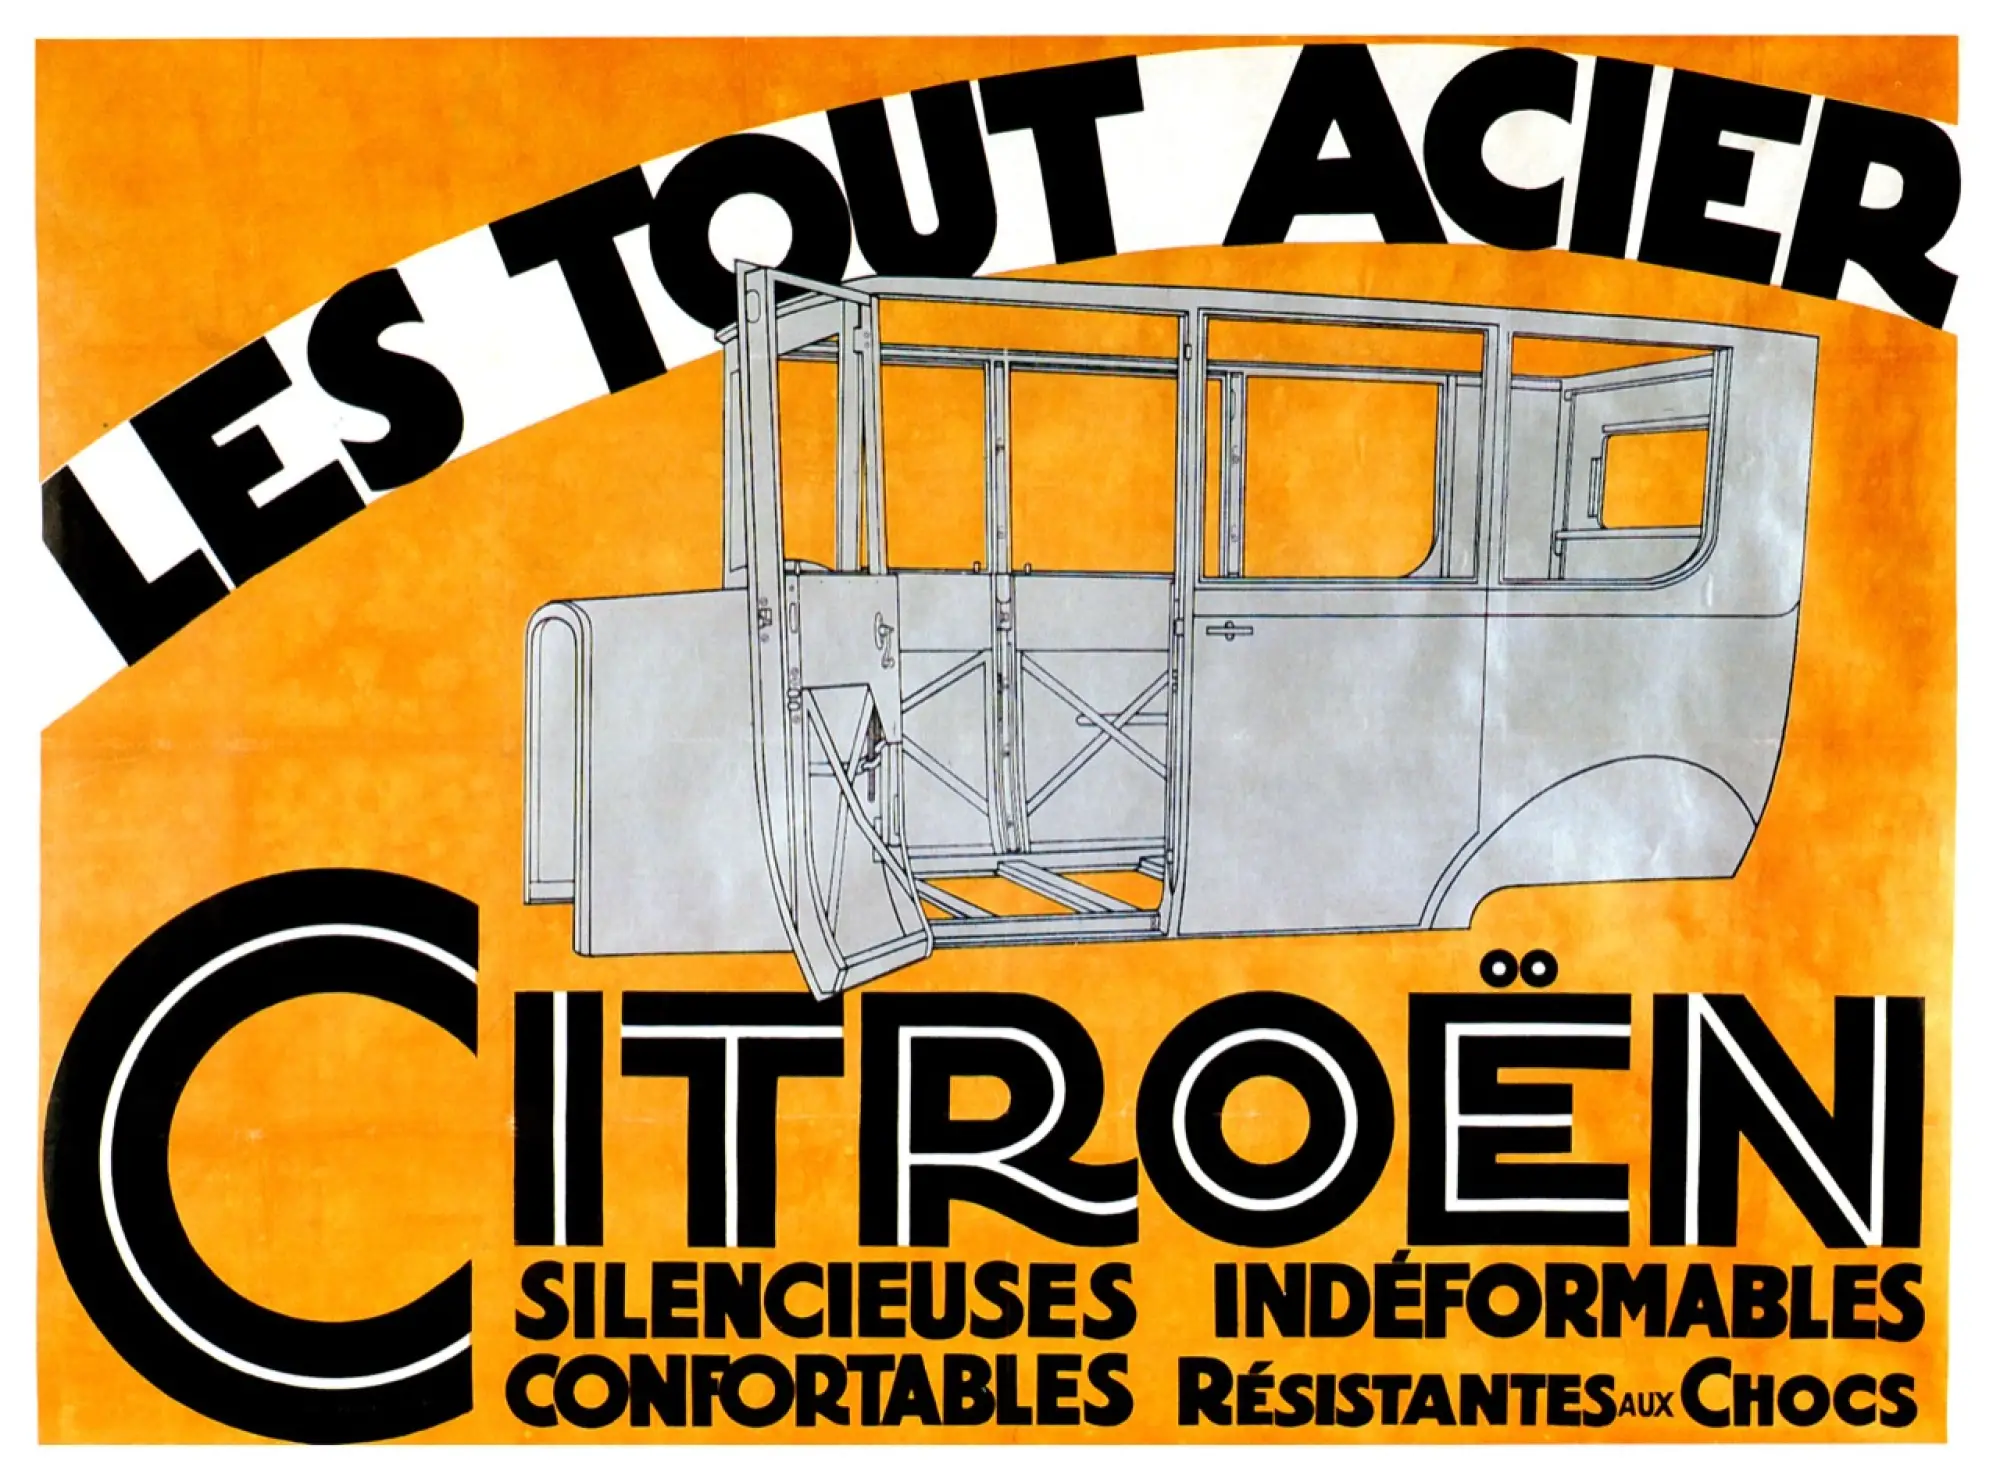 Citroen - Moteur Flottant e Tout Acier - 5